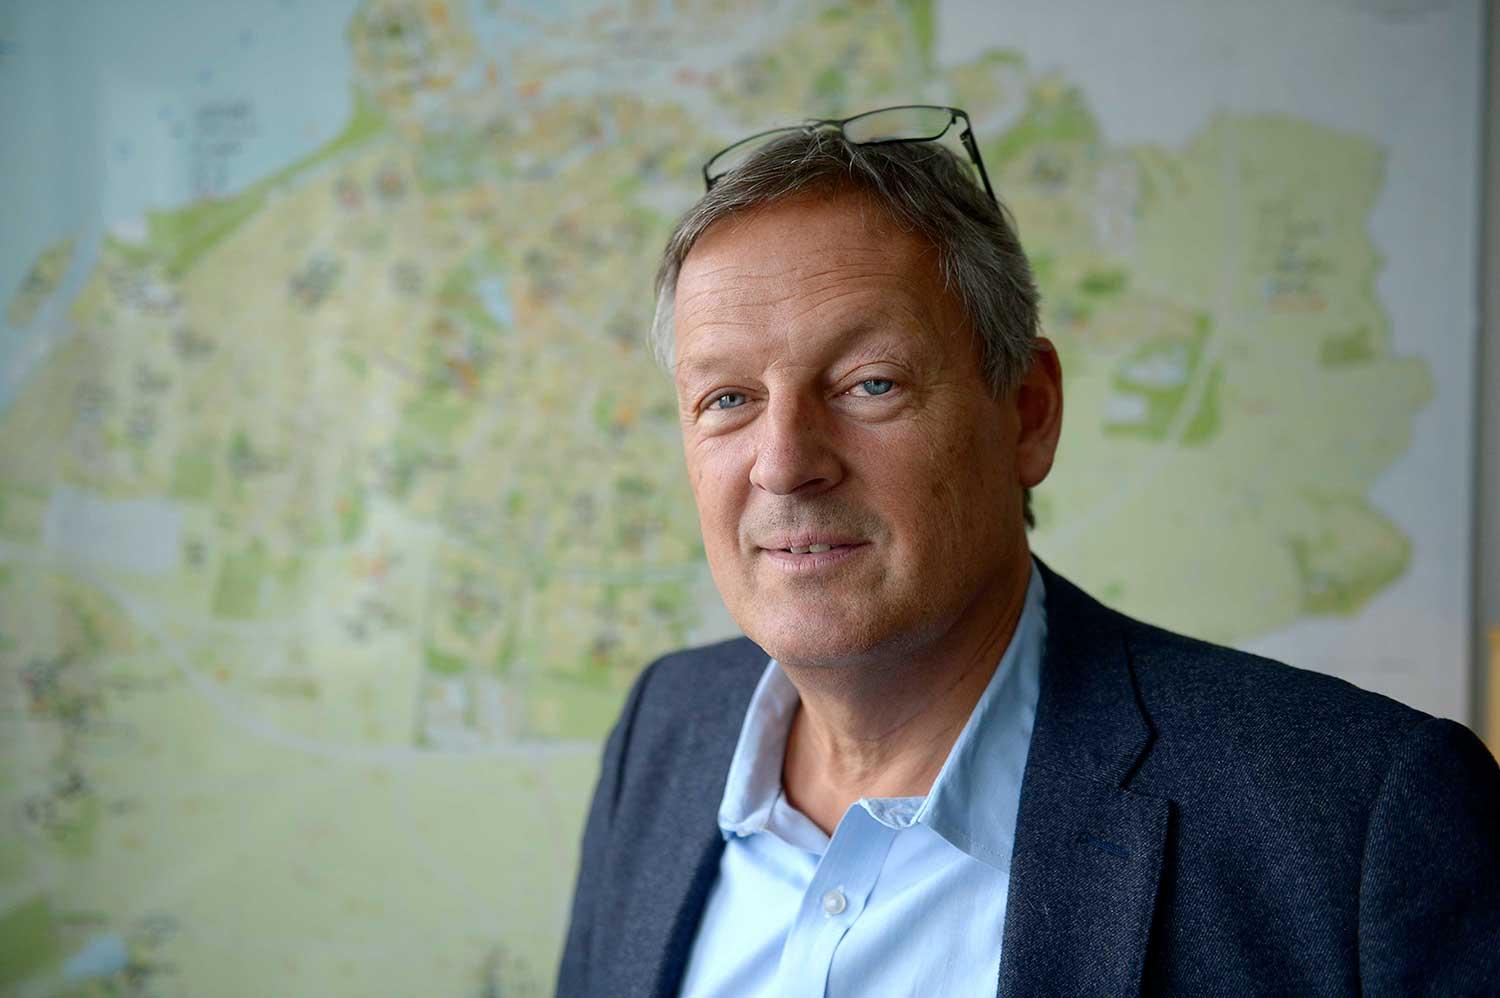 Anders Malmquist är grundskoledirektör och tidigare lärare. Ytterst är det han som har ansvaret för att lösa Malmös skolekvation med många nya elever och alltför få skolor.